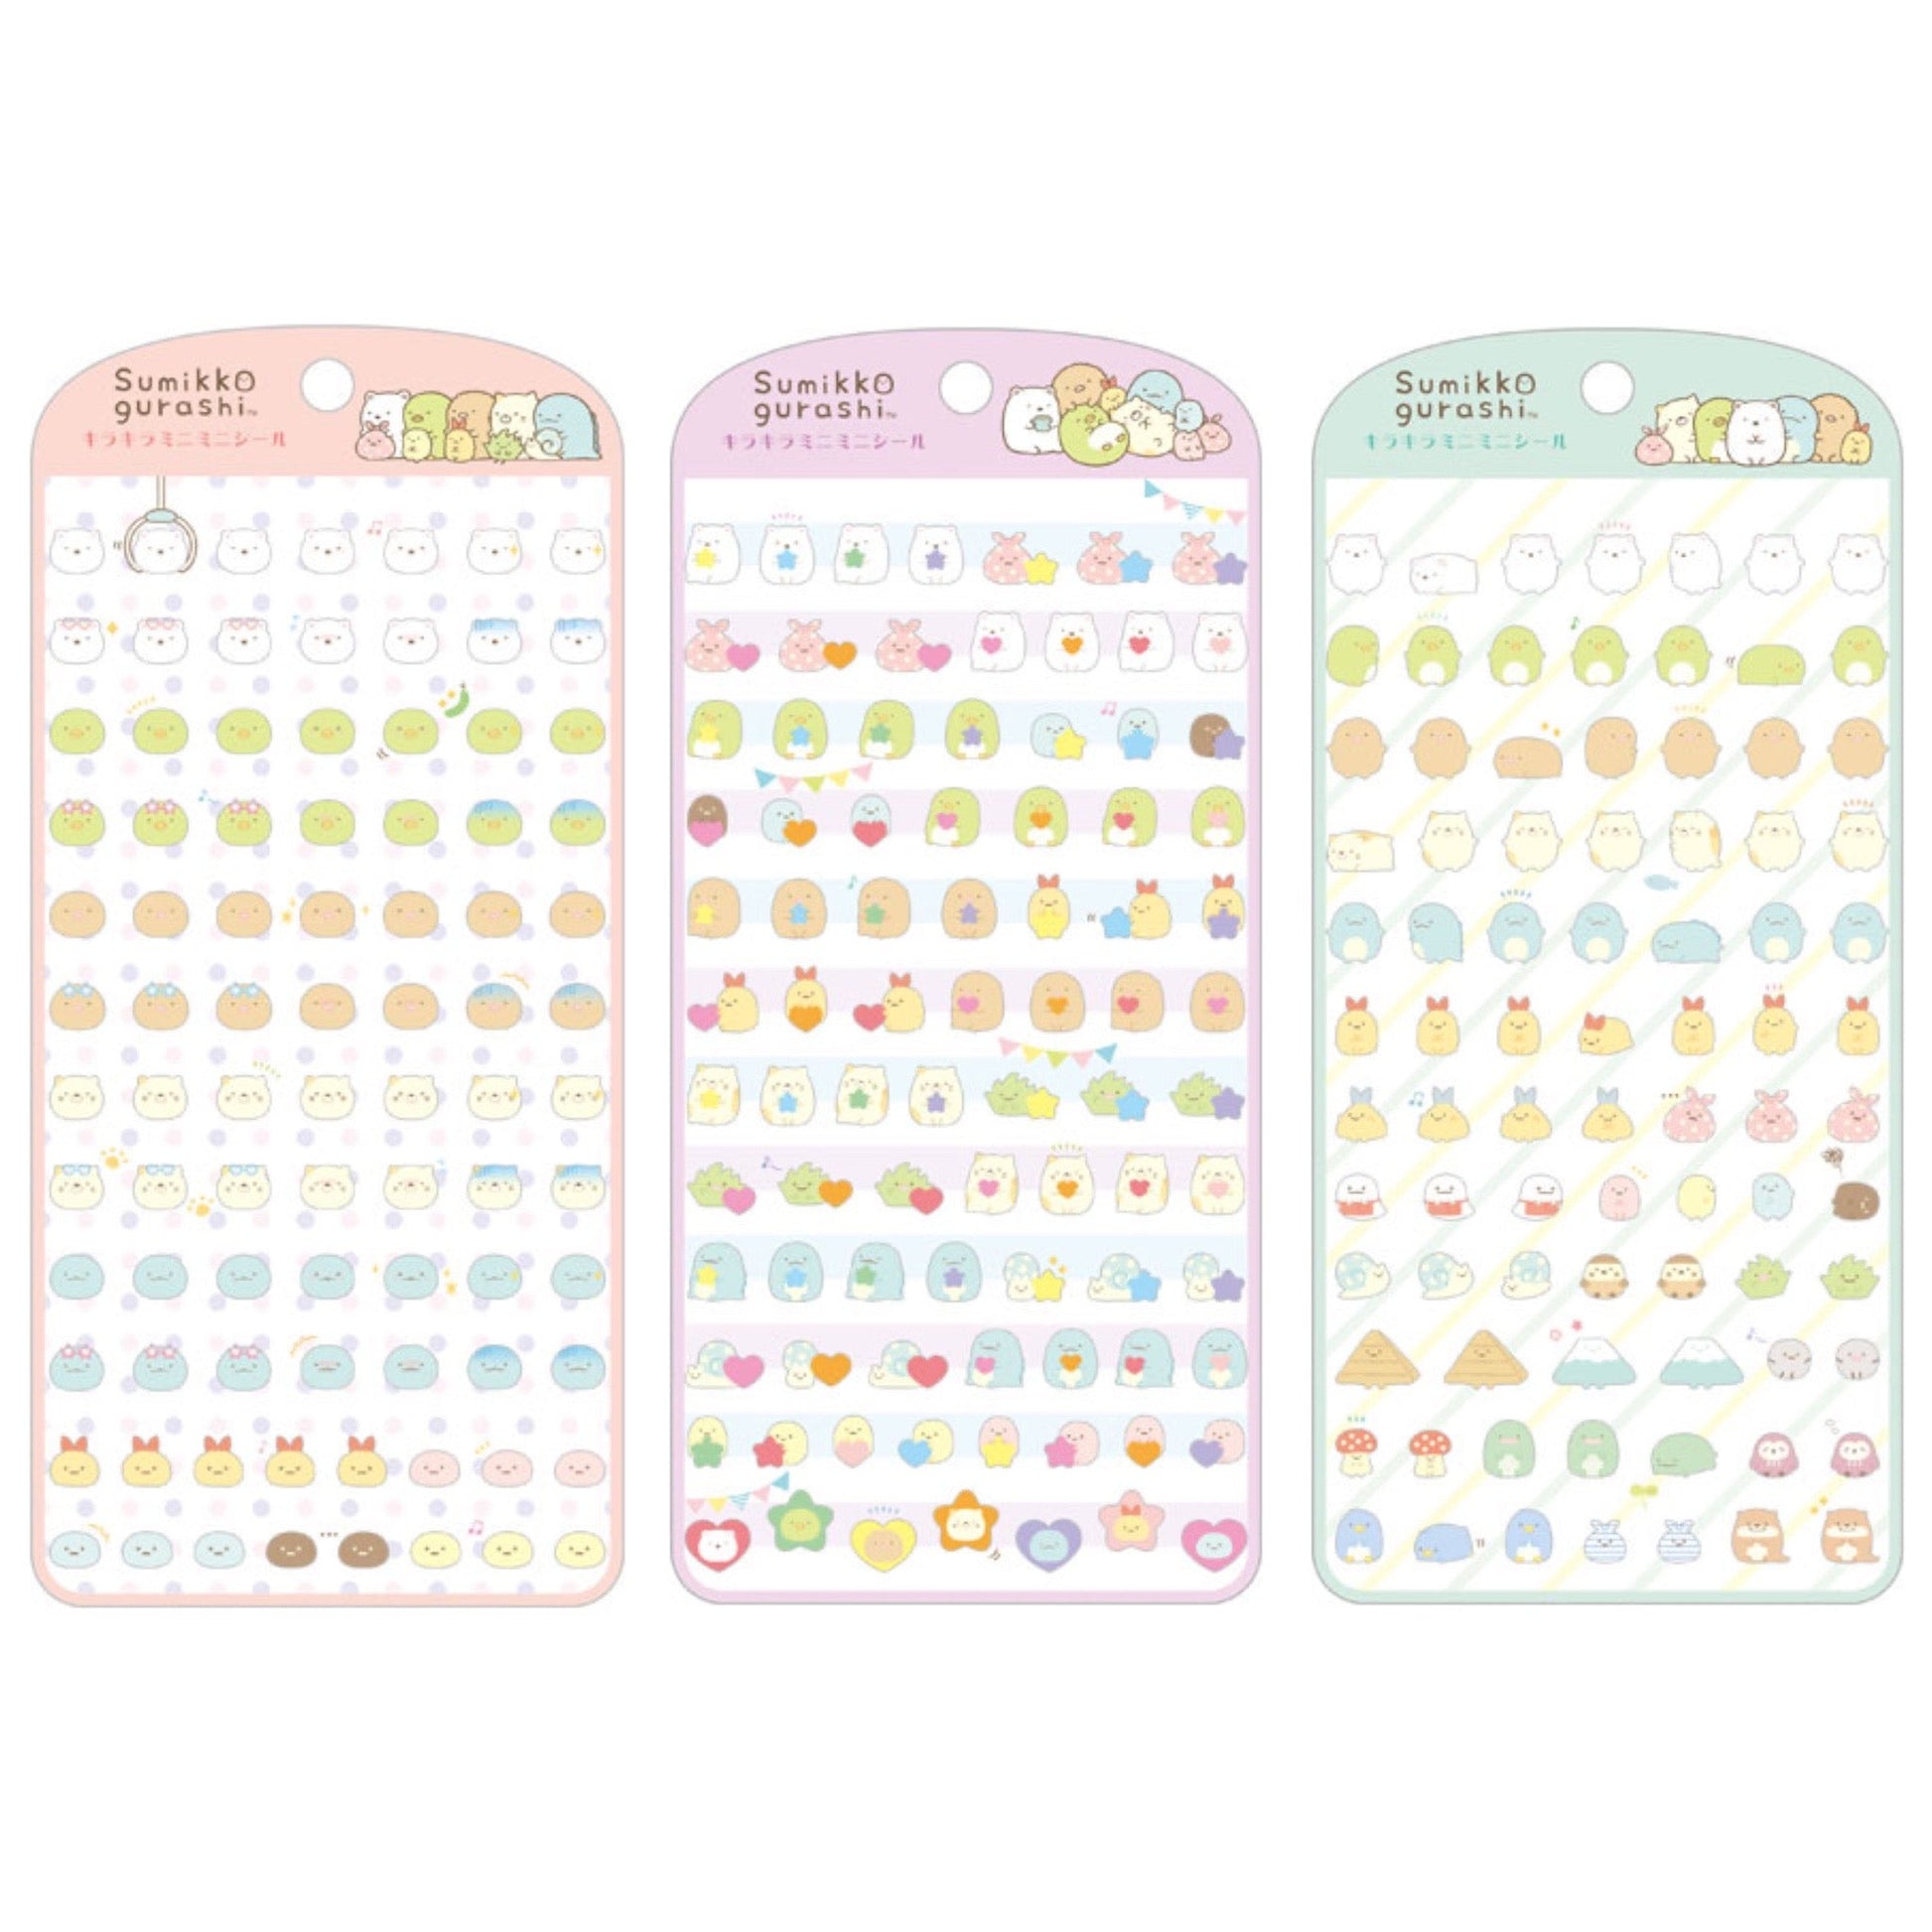 Sumikko Gurashi "KiraKira" Mini Sticker Sheet - Rosey’s Kawaii Shop